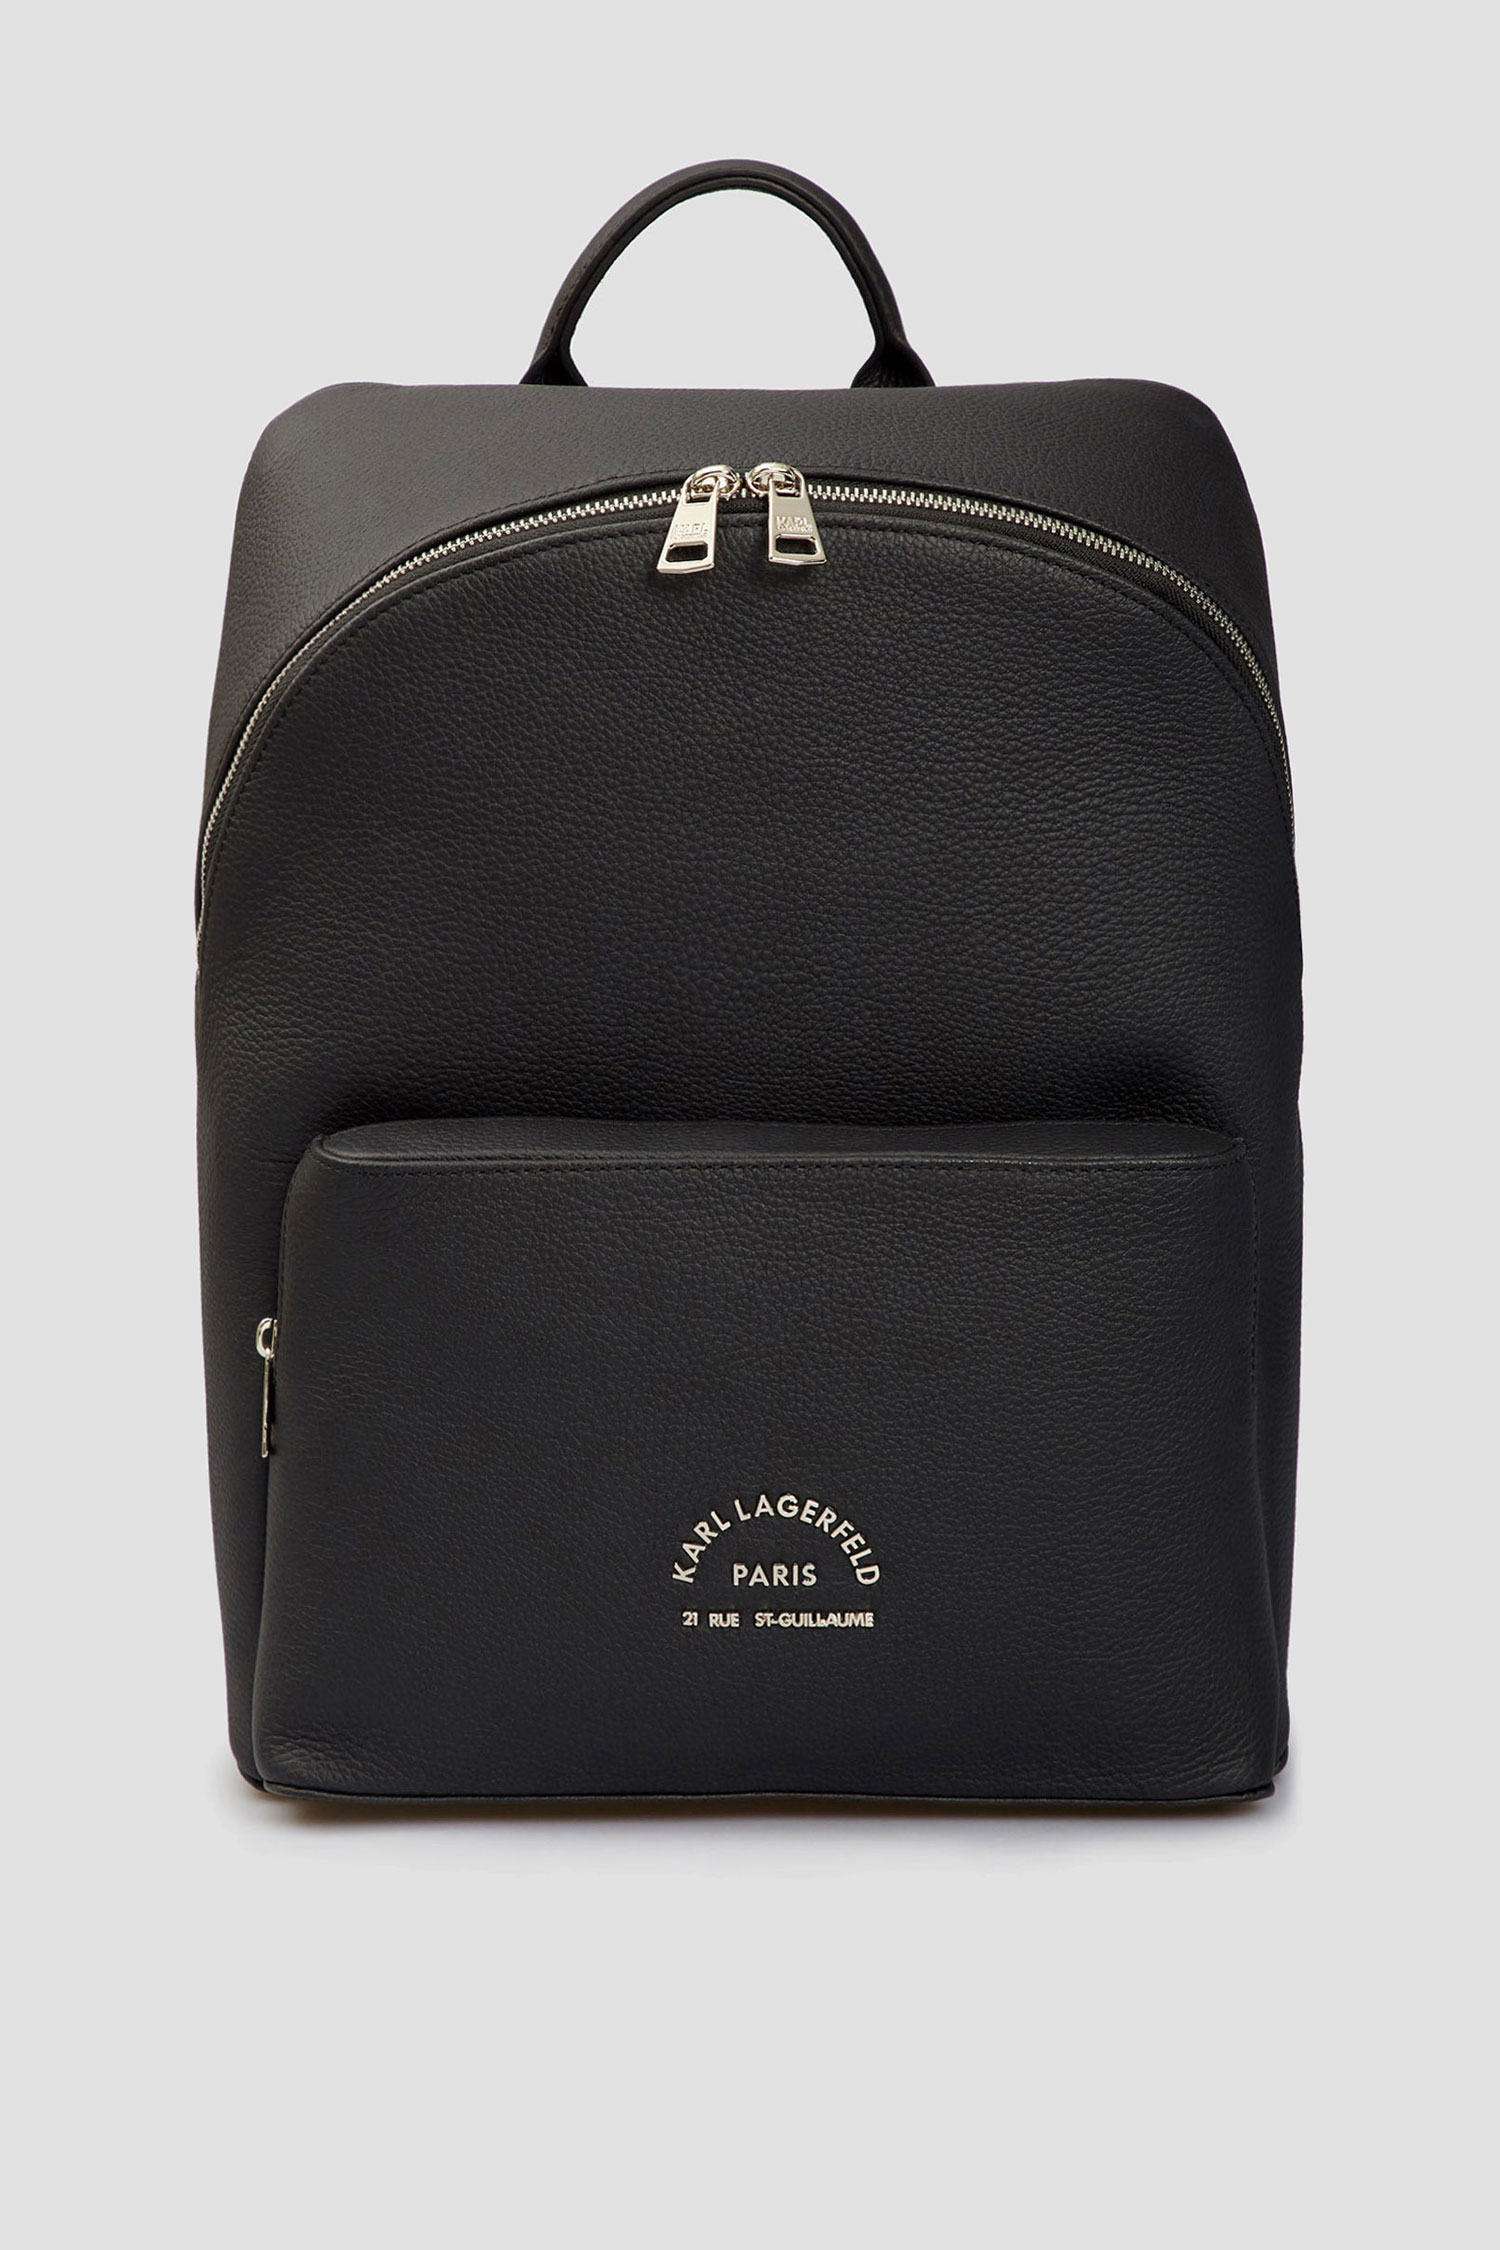 Чоловічий чорний шкіряний рюкзак Karl Lagerfeld 521451.815908;990